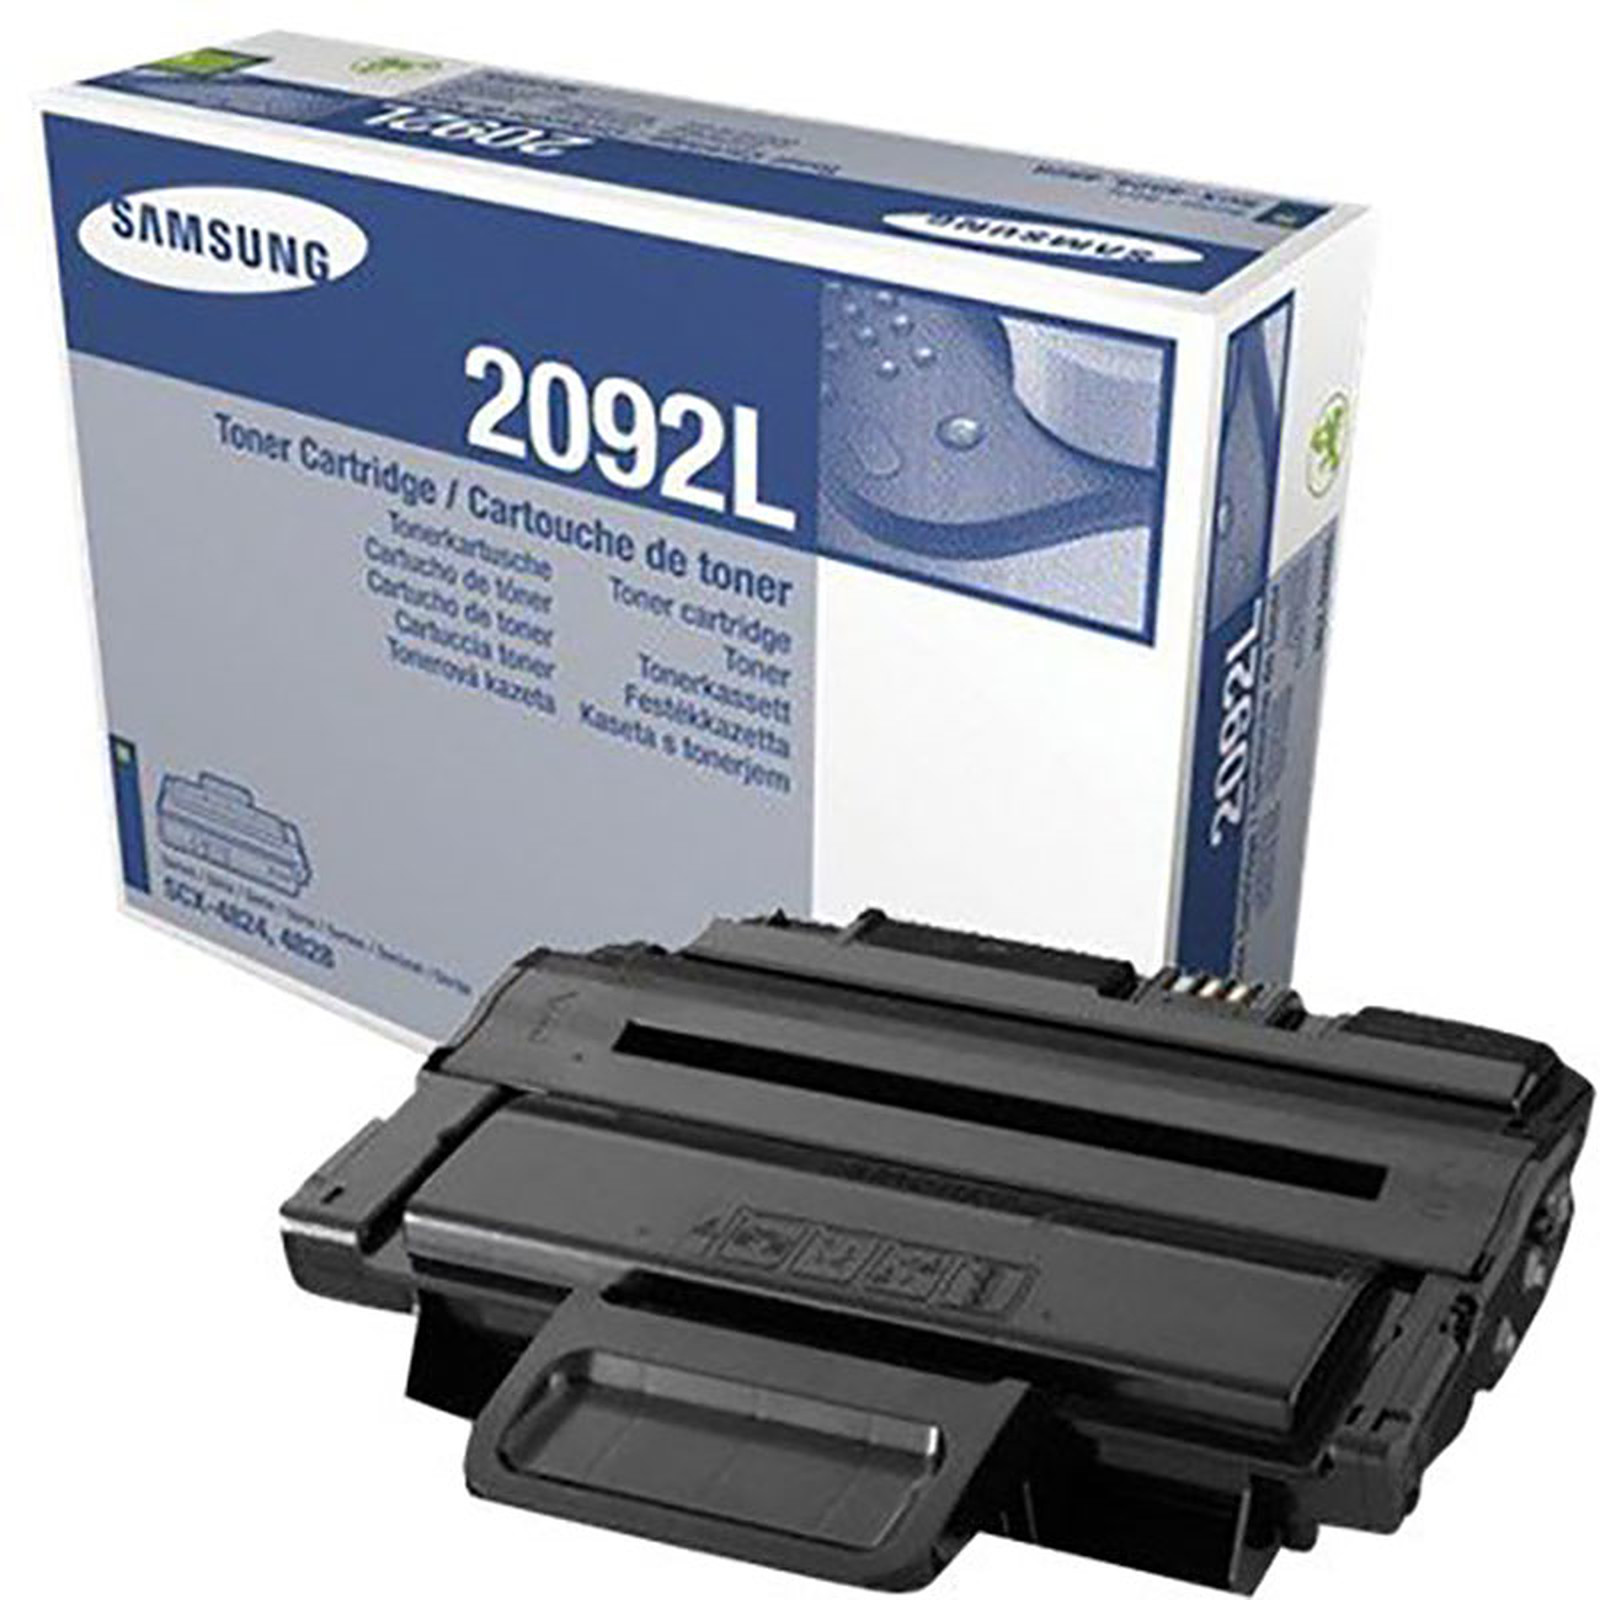 Samsung MLT-D2092L - Toner imprimante Samsung - Occasion